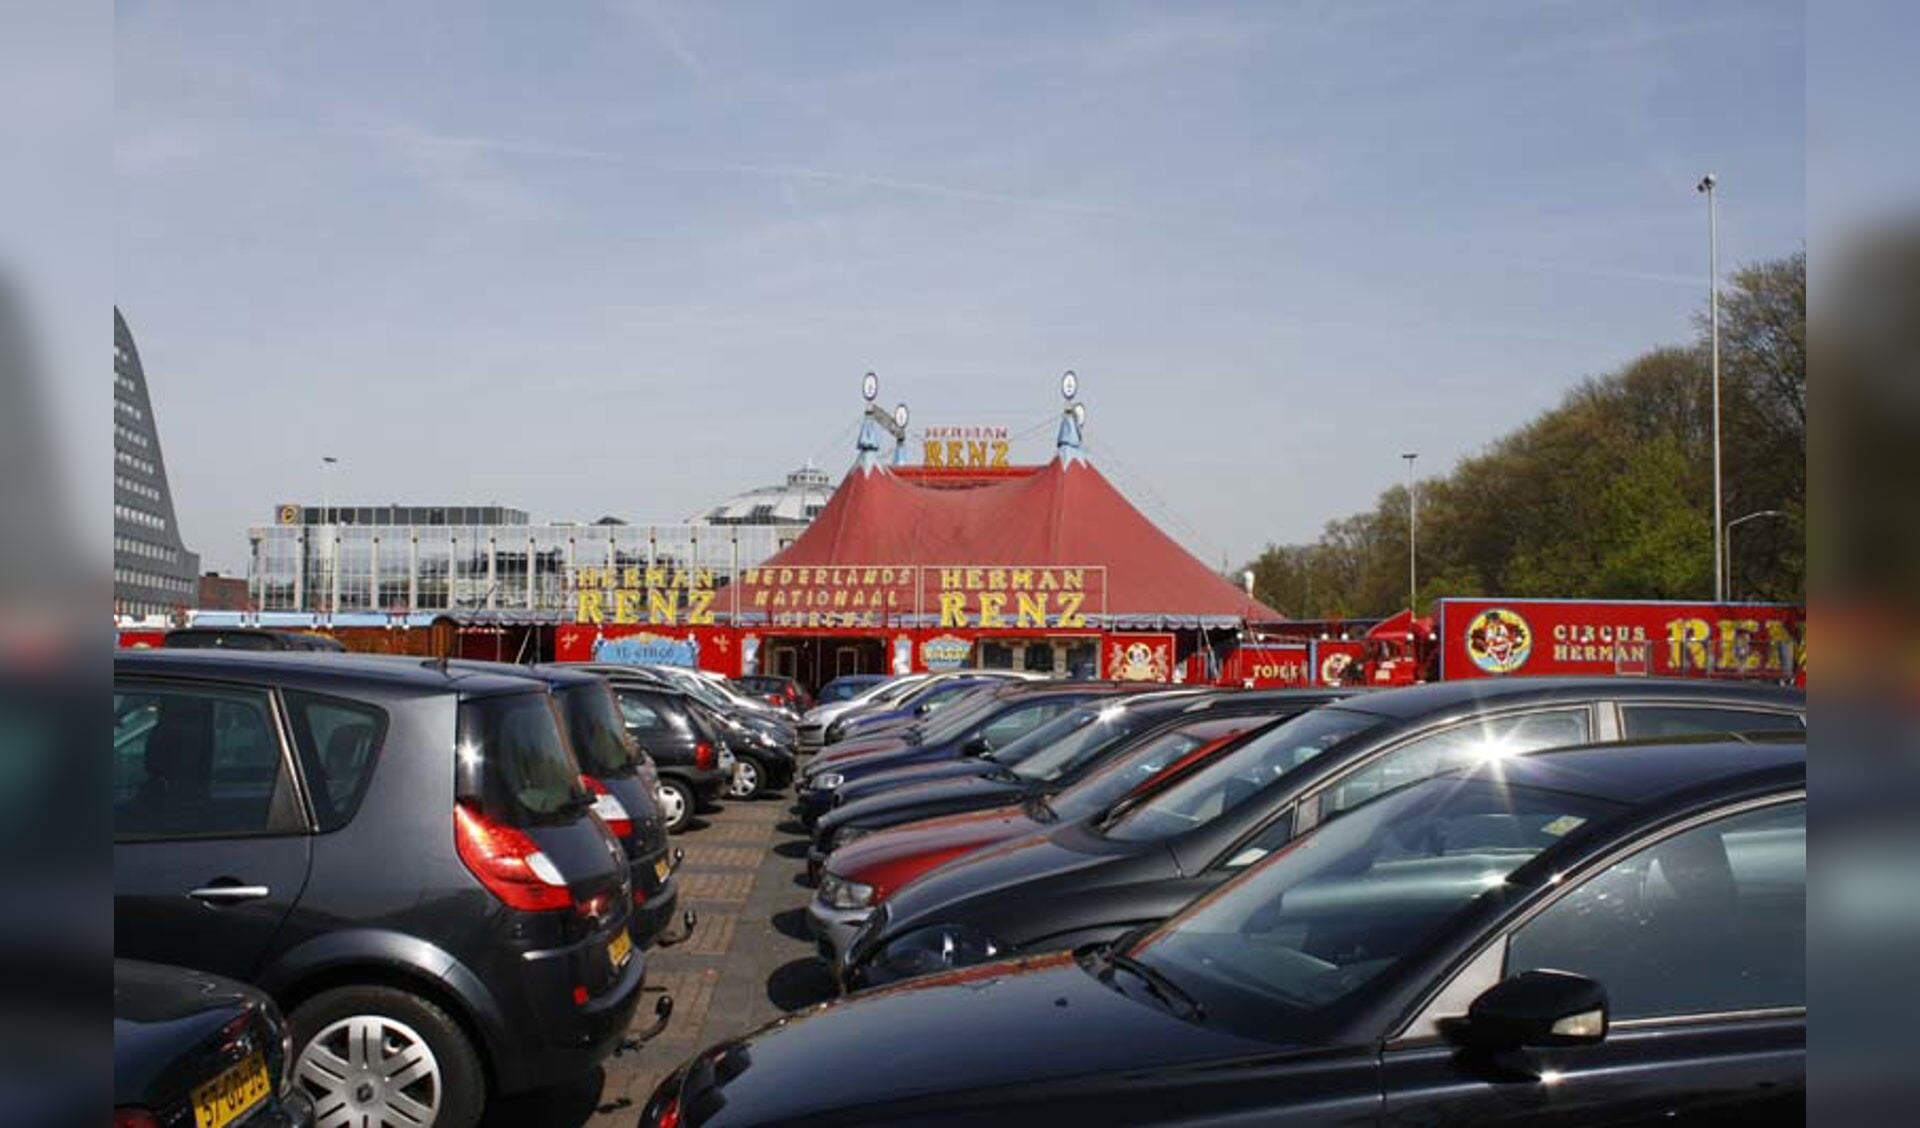 Opbouw van Circus Renz op het Chasséveld foto Jelle Wilders